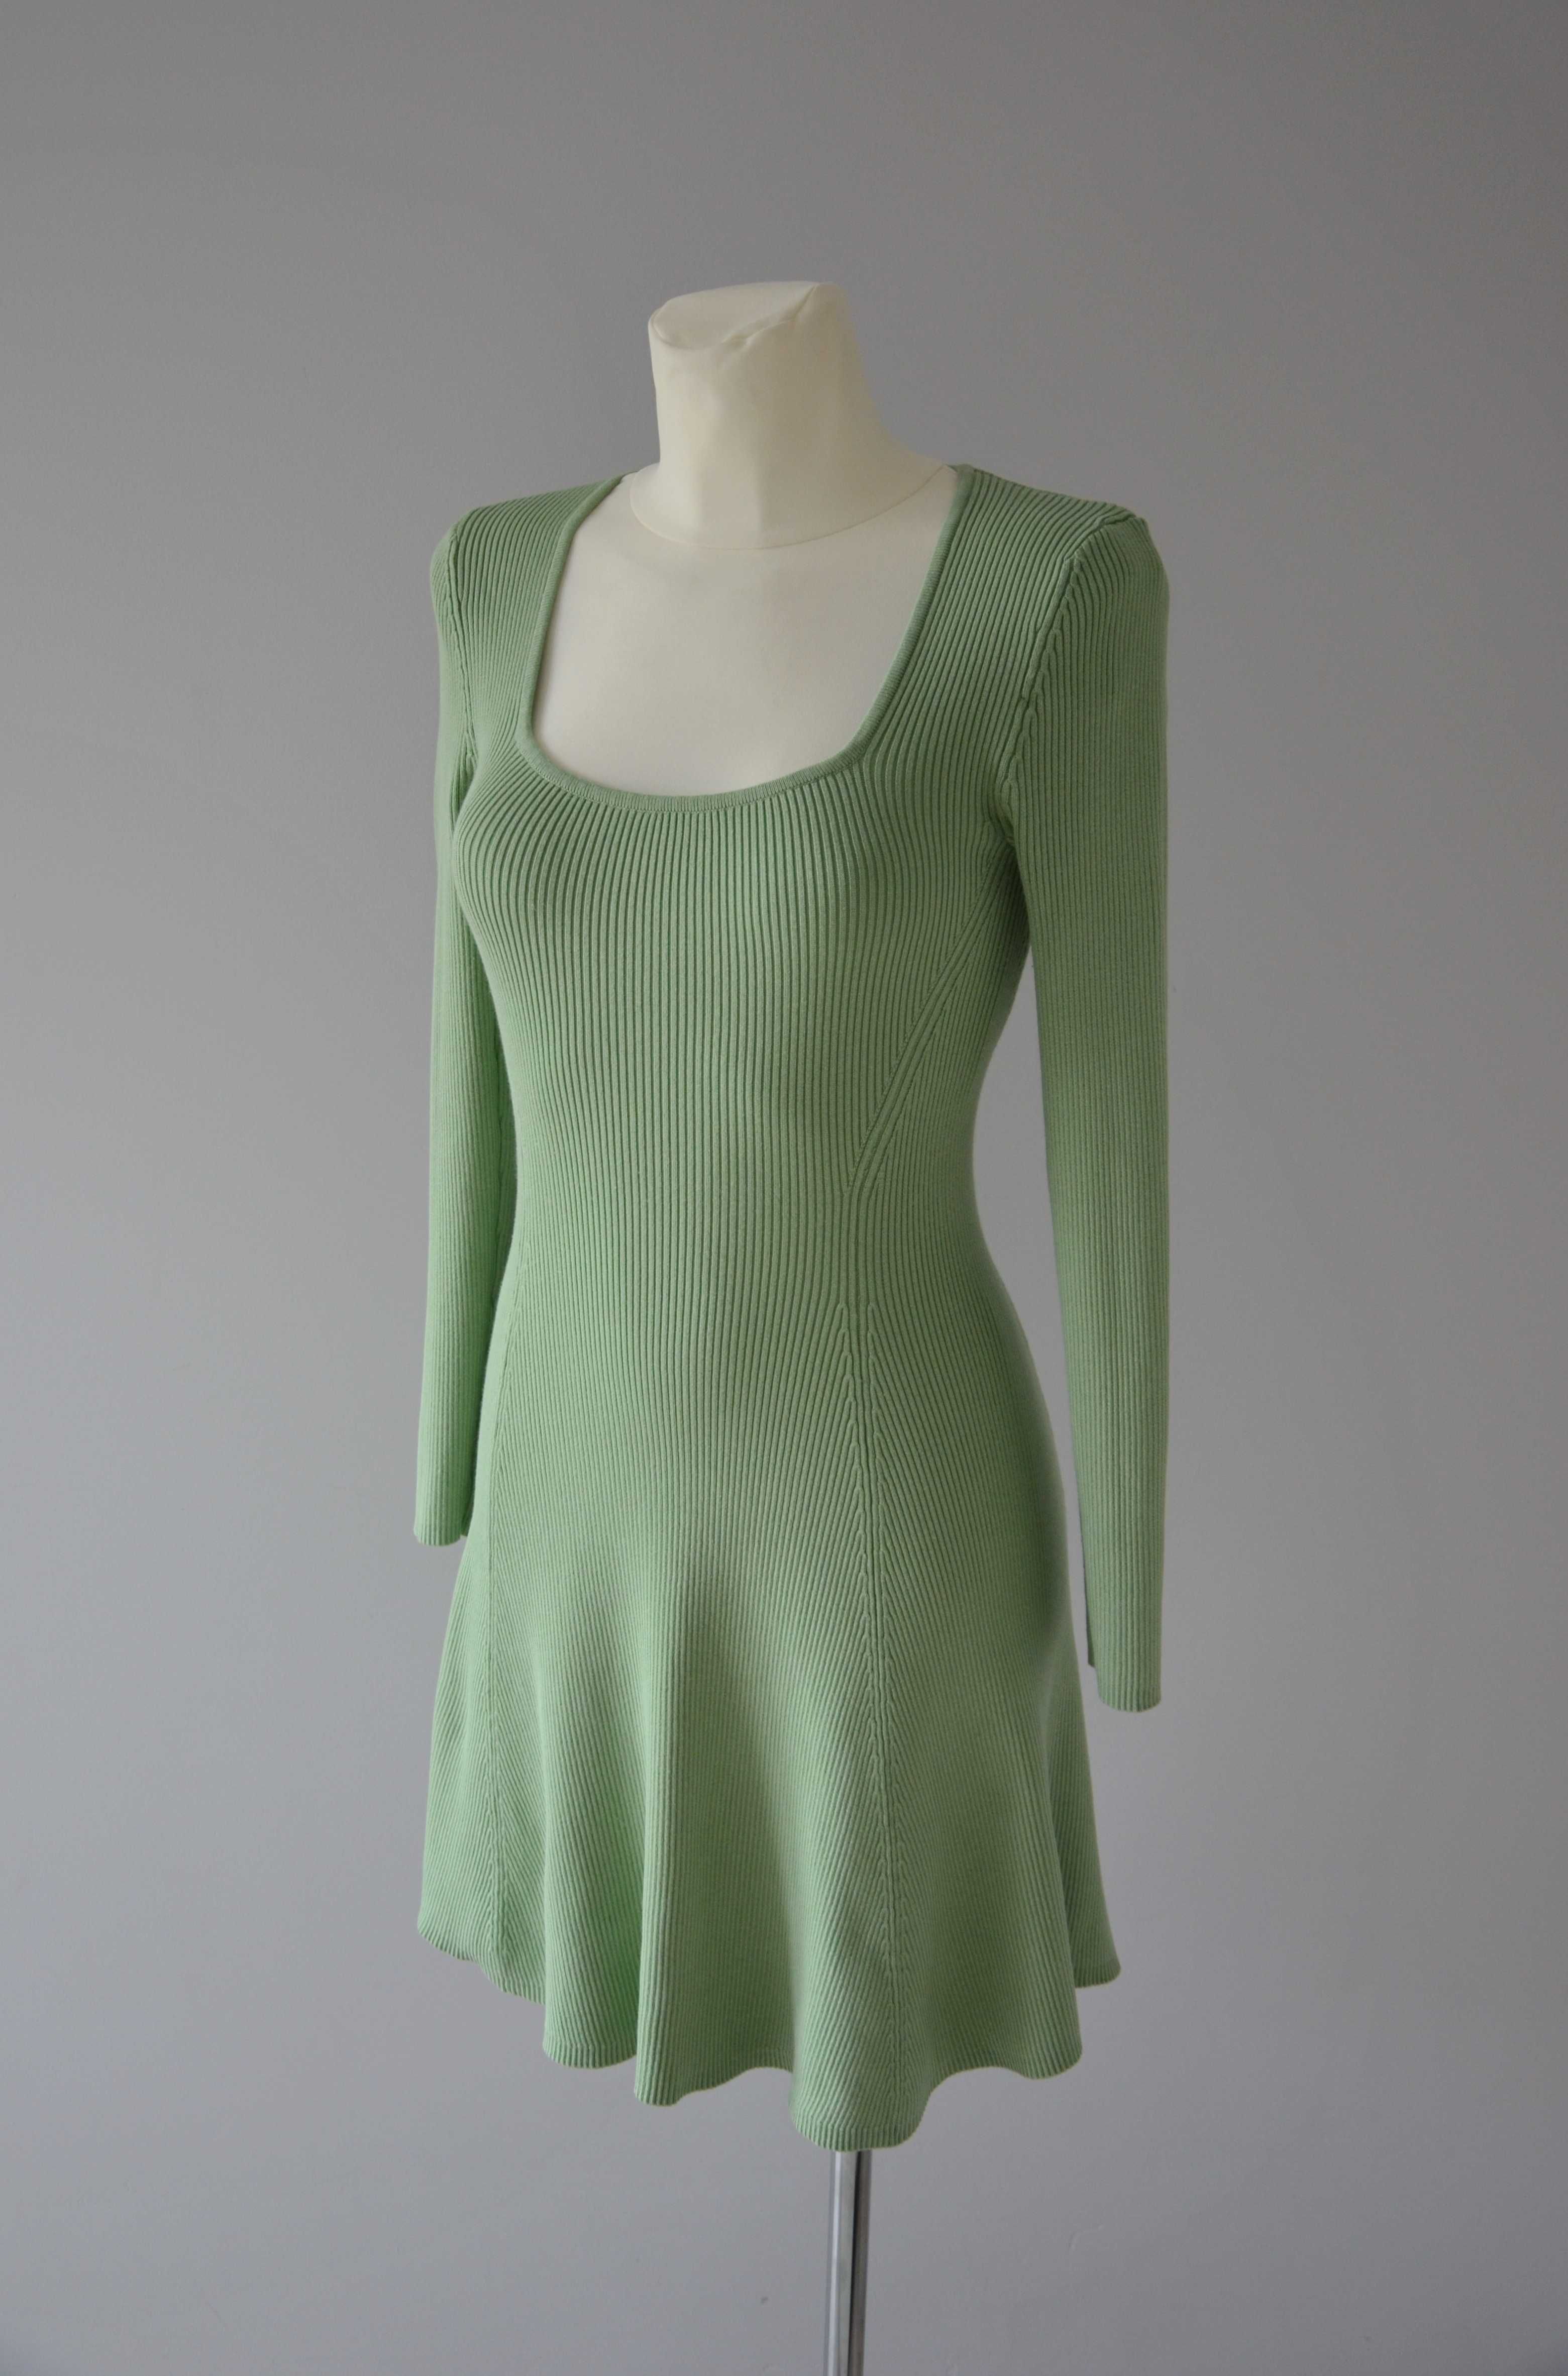 Zara zielona dzianinowa rozkloszowana sukienka kwadratowy dekolt 36 S